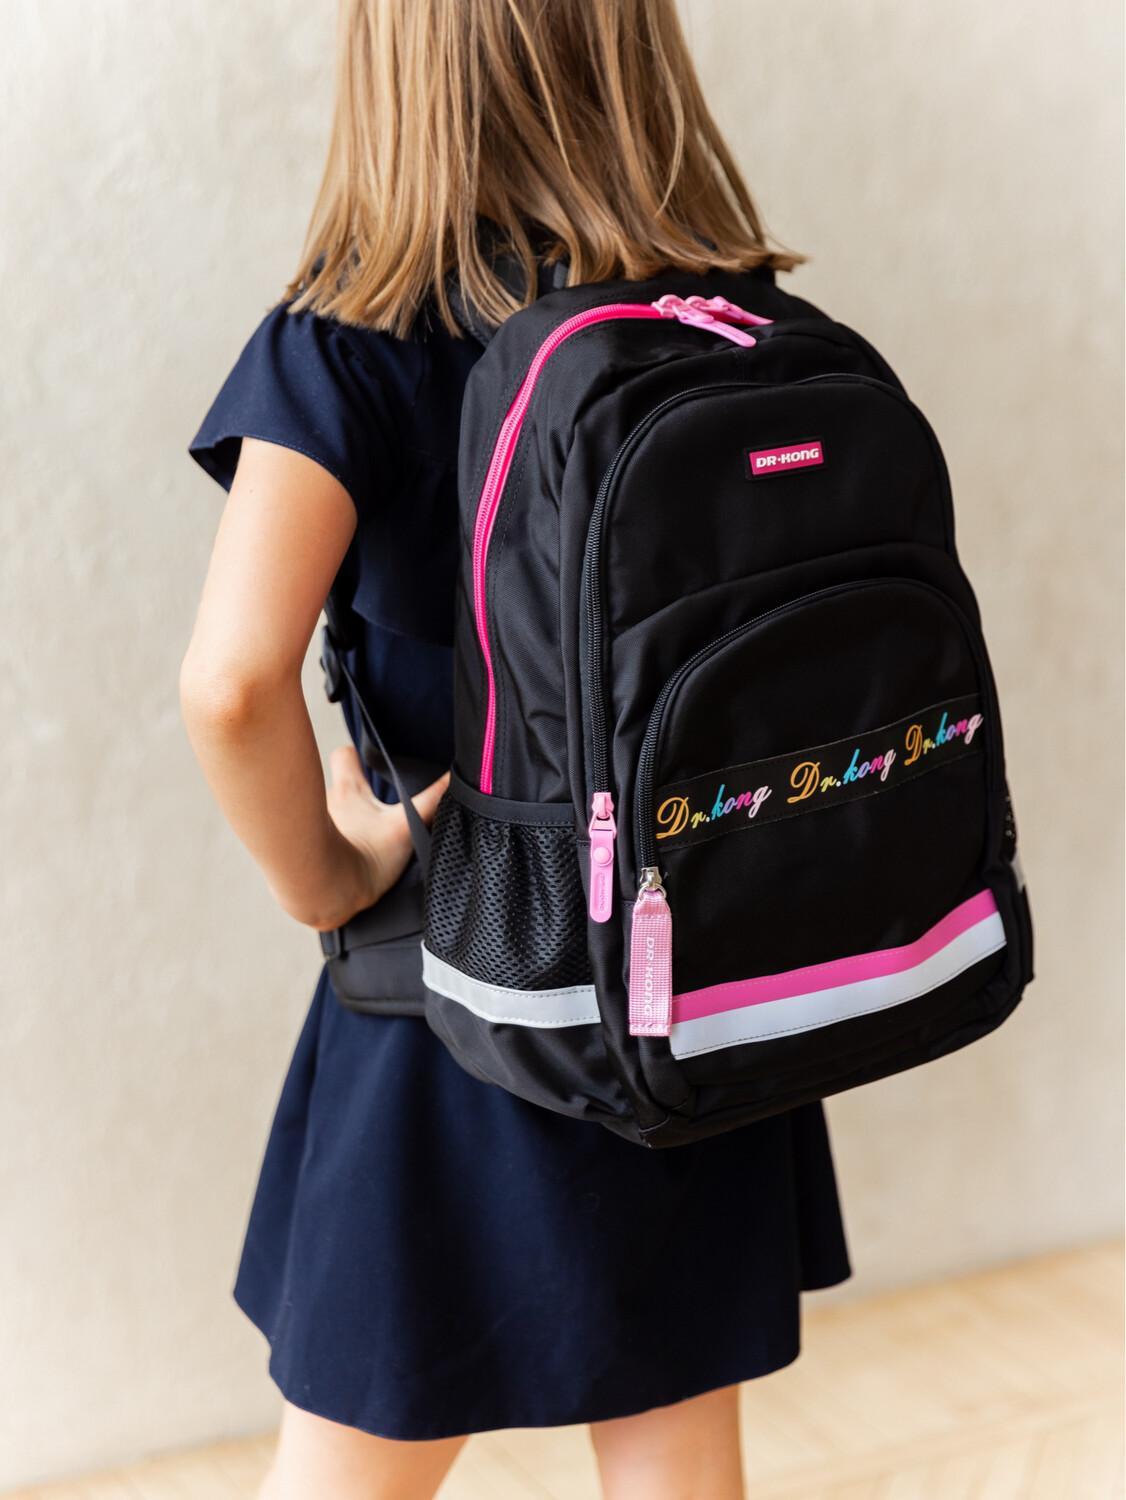 Школьный рюкзак DR.KONG Z 1220 для девочек на рост 130 - 150 см.